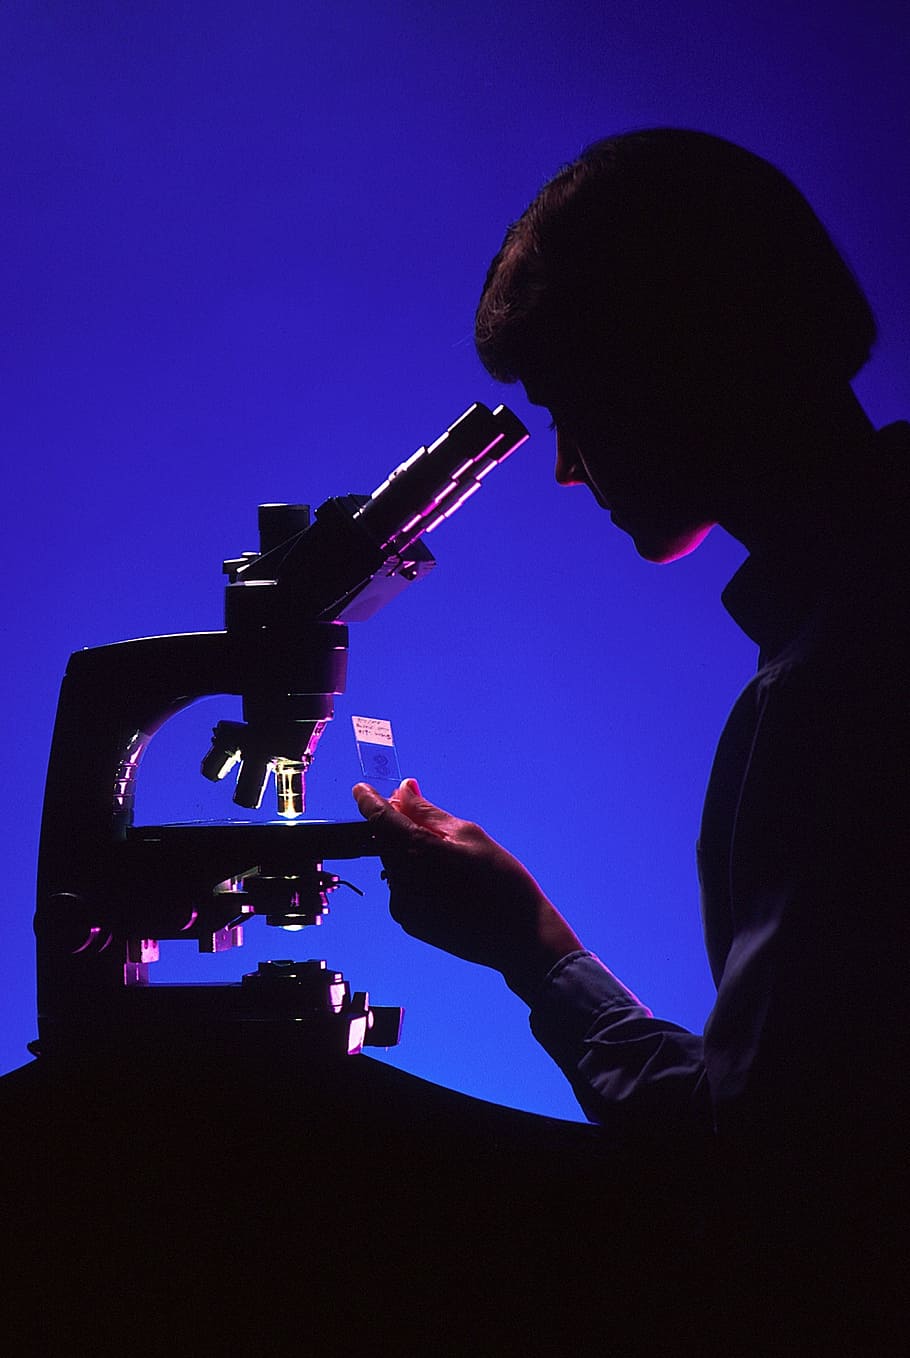 человек, использующий микроскоп, ученый с микроскопом, силуэты, лаборатория, наука, биология, медицинский, слайд, исследование